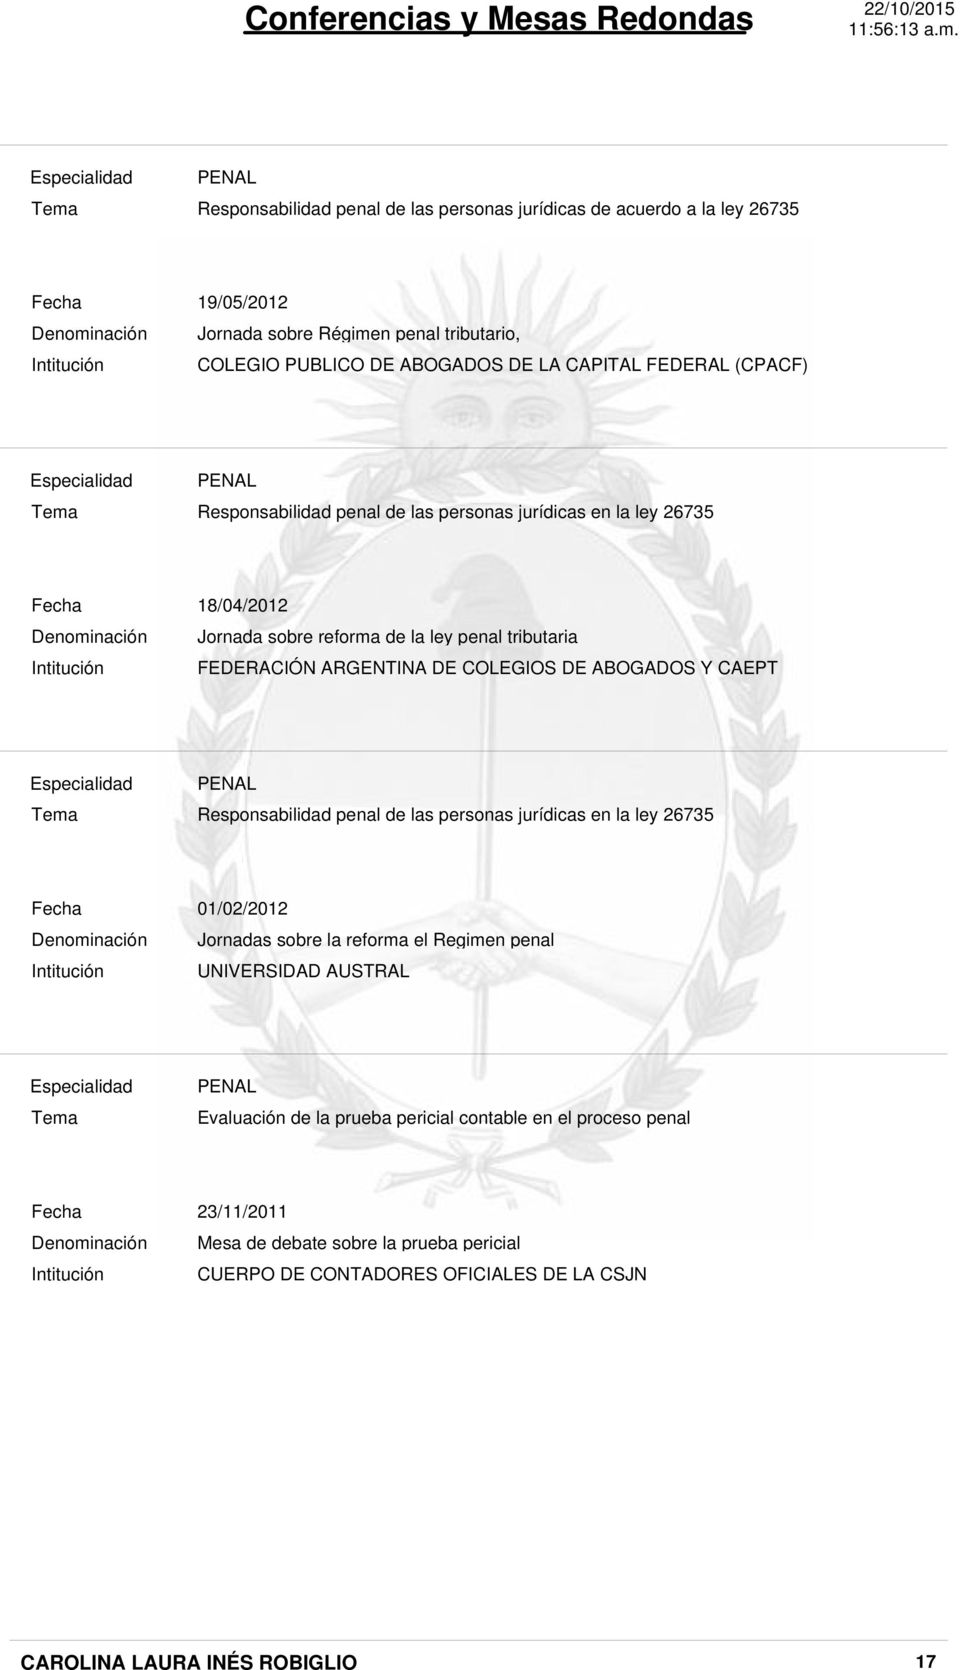 ARGENTINA DE COLEGIOS DE ABOGADOS Y CAEPT Responsabilidad penal de las personas jurídicas en la ley 26735 01/02/2012 Jornadas sobre la reforma el Regimen penal tributario UNIVERSIDAD